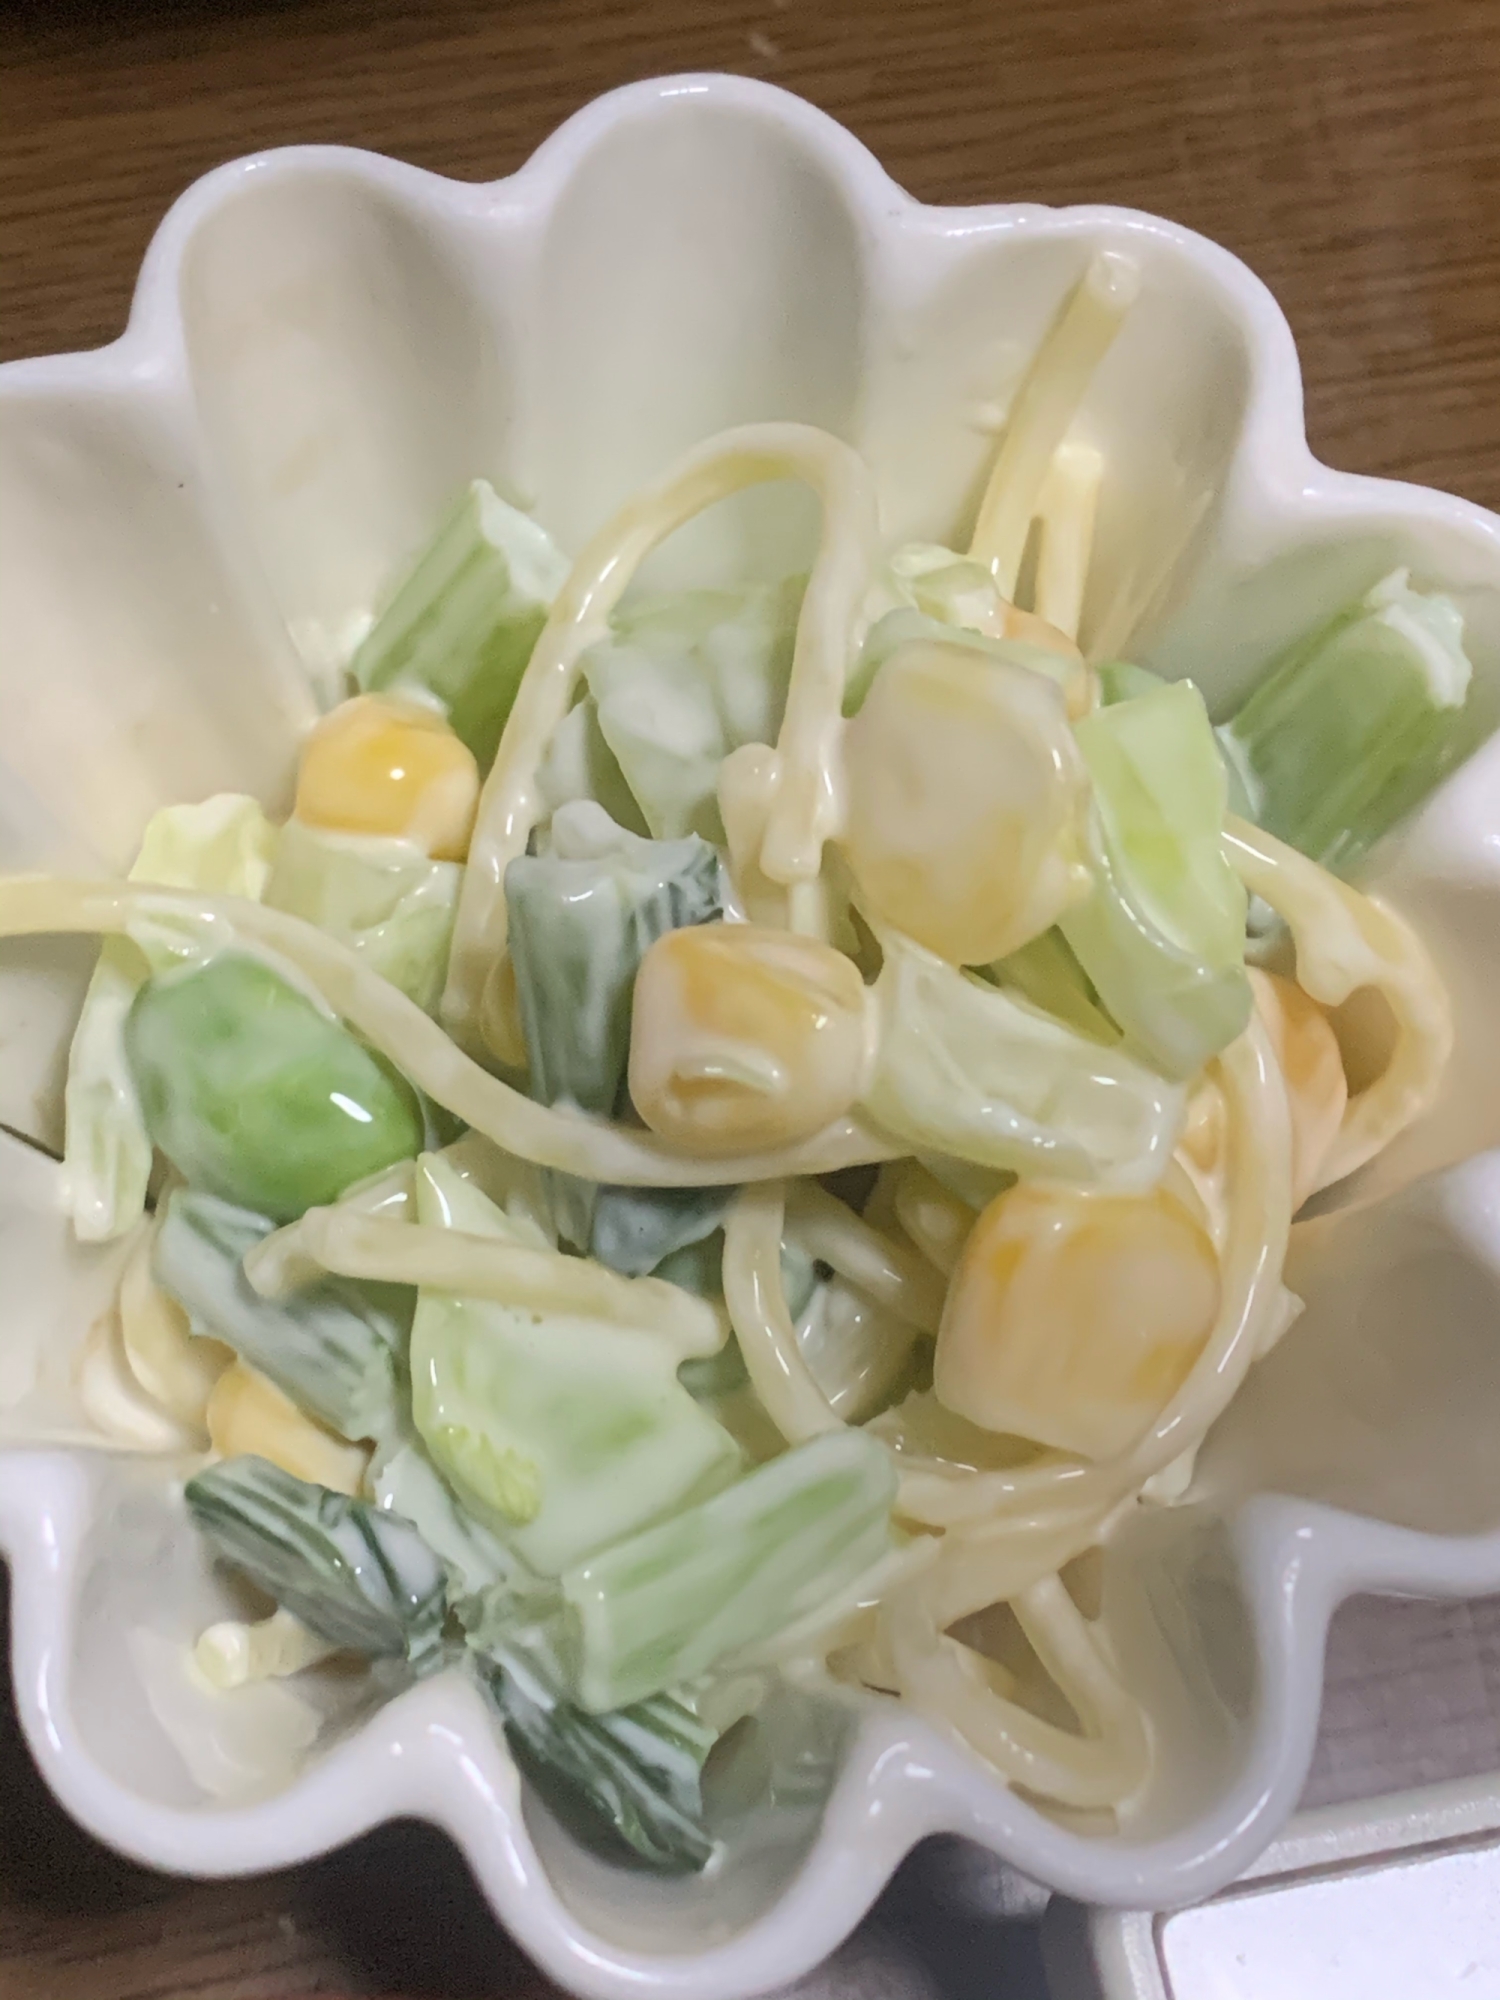 小松菜とミックスベジタブル、枝豆のスパサラダ